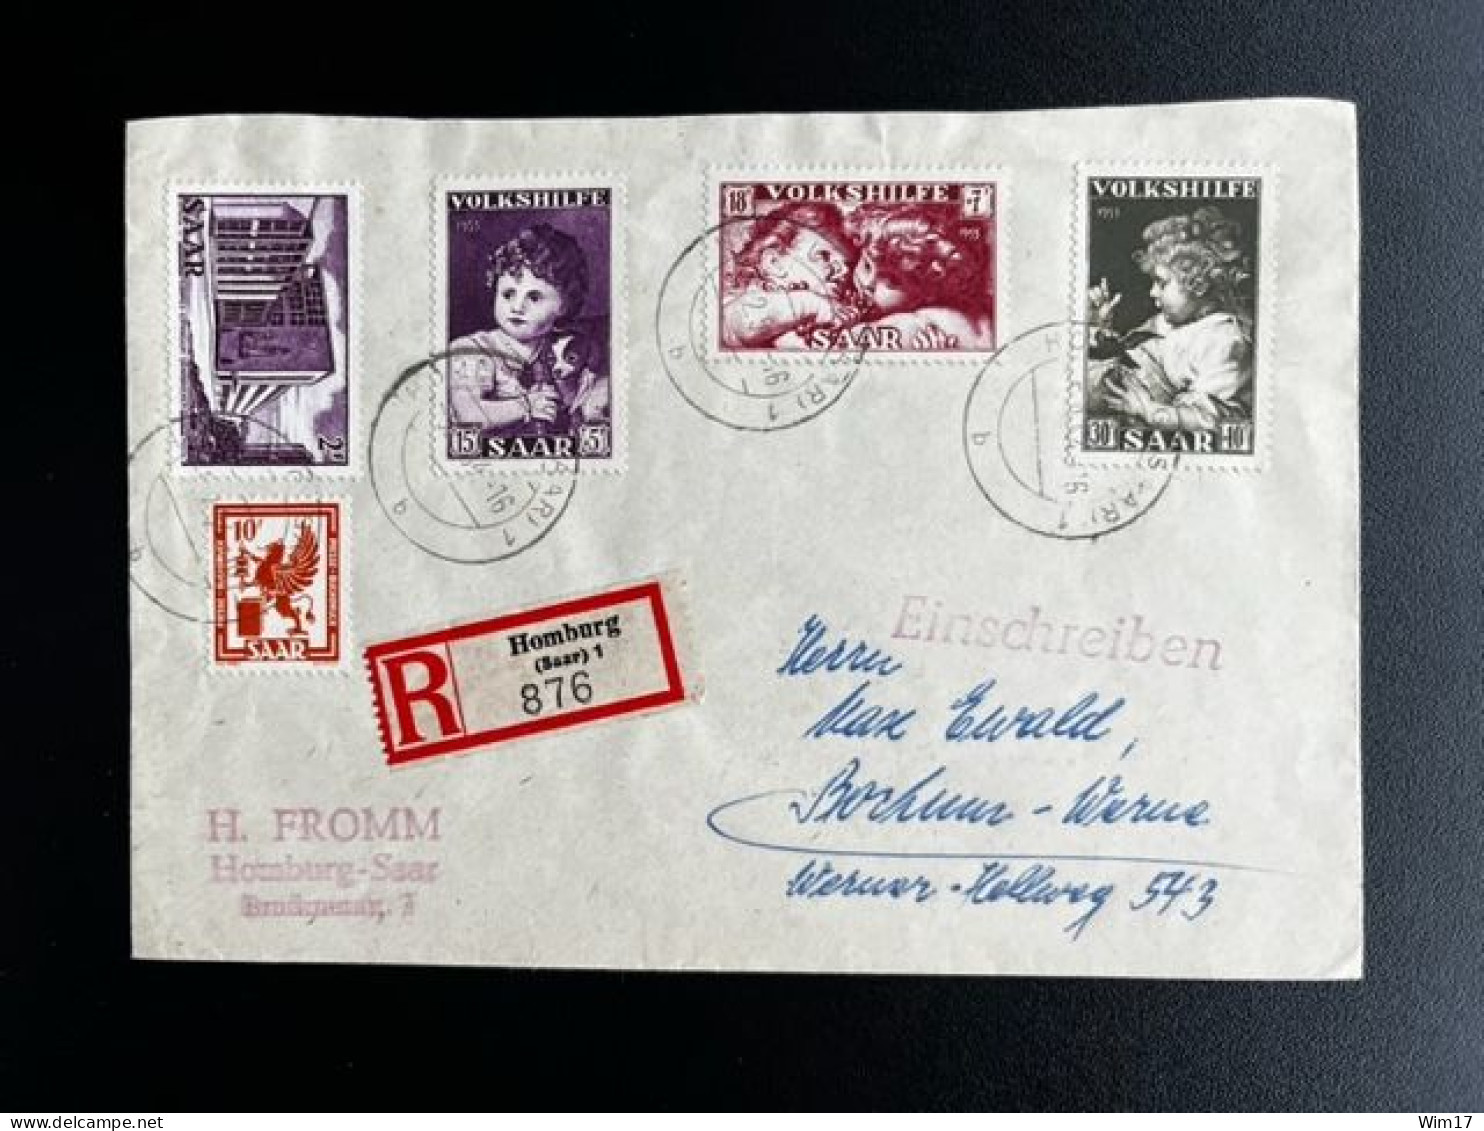 GERMANY SAAR SARRE SAARLAND 1954 REGISTERED LETTER HOMBURG TO BOCHUM 05-02-1954 DUITSLAND DEUTSCHLAND EINSCHREIBEN - Postal  Stationery